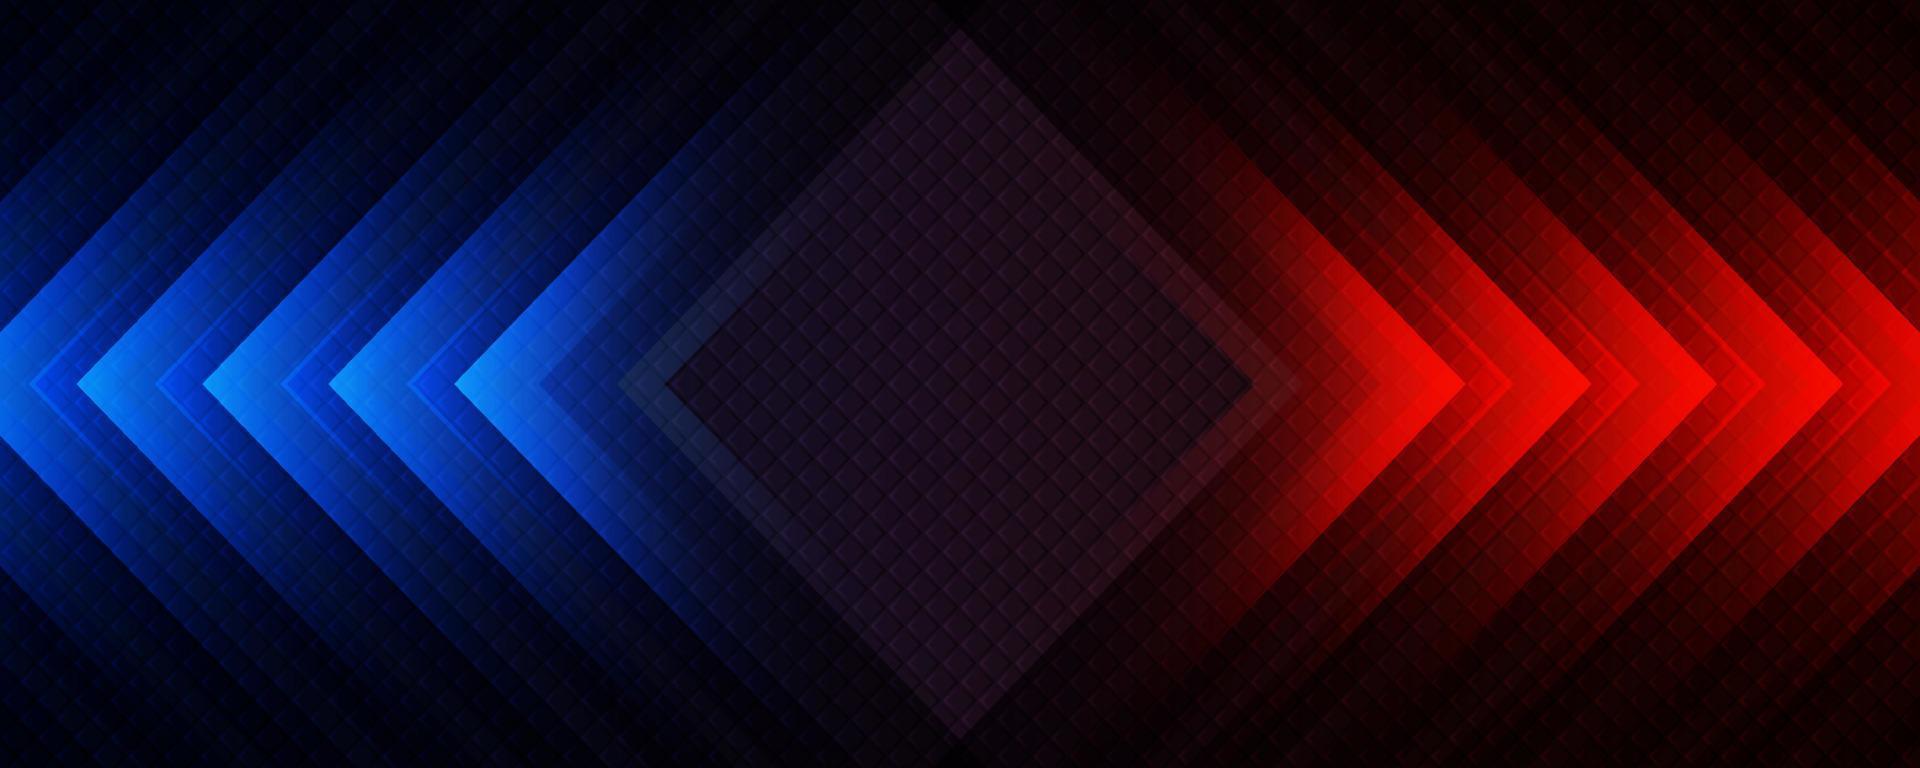 3d rosso blu techno astratto sfondo sovrapposizione strato su buio spazio con rombo decorazione. moderno grafico design elemento movimento stile concetto per striscione, volantino, carta, opuscolo coperchio, o atterraggio pagina vettore